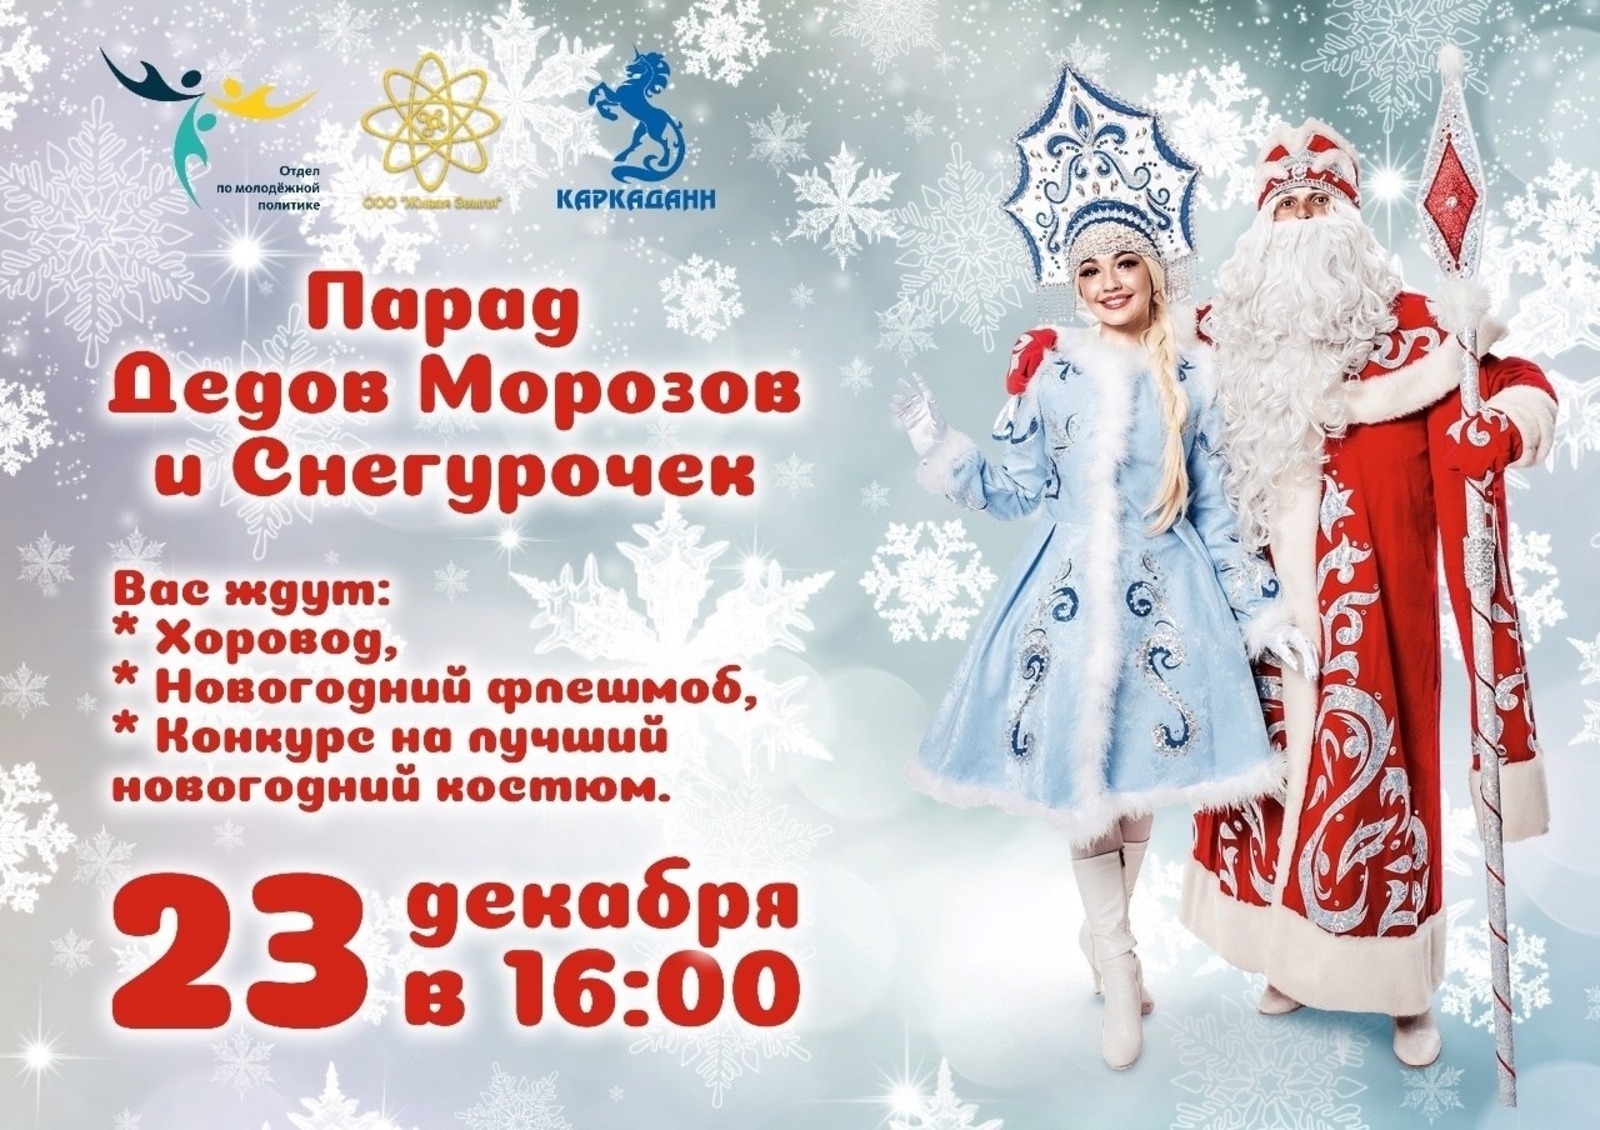 В Стерлитамаке пройдет парад Снегурочек и Дедов Морозов